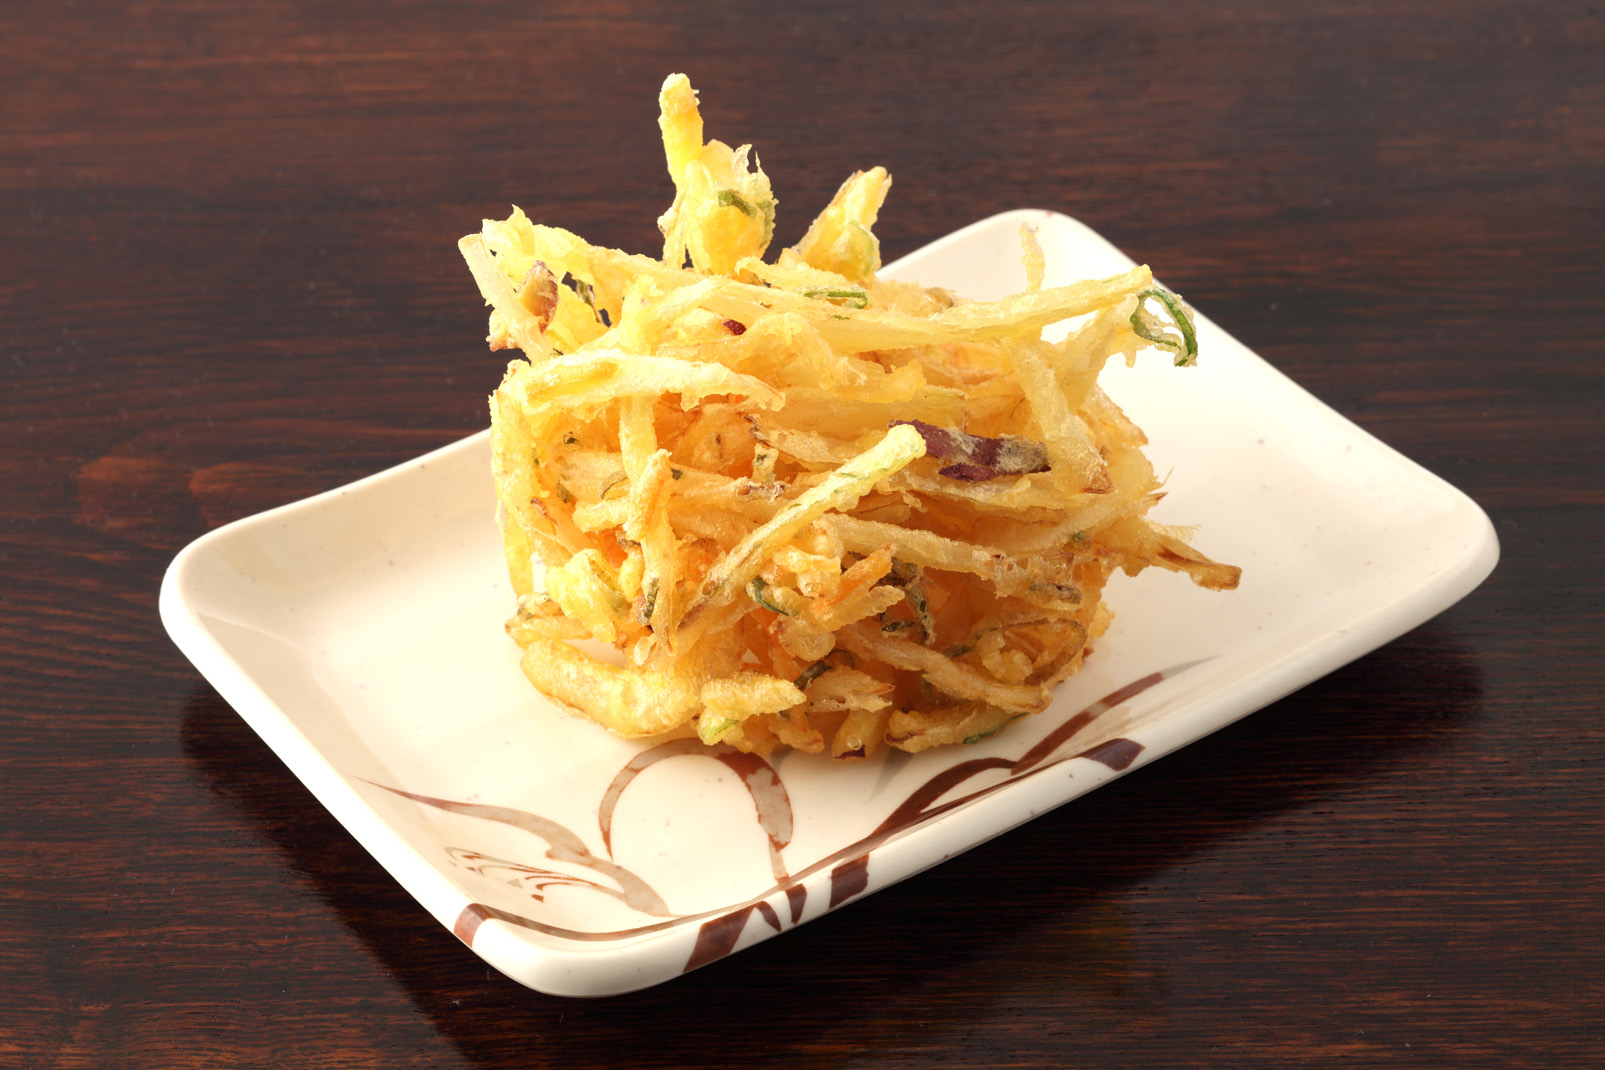 丸亀製麺の天ぷらテイクアウト人気ランキング3位の「野菜かき揚げ」